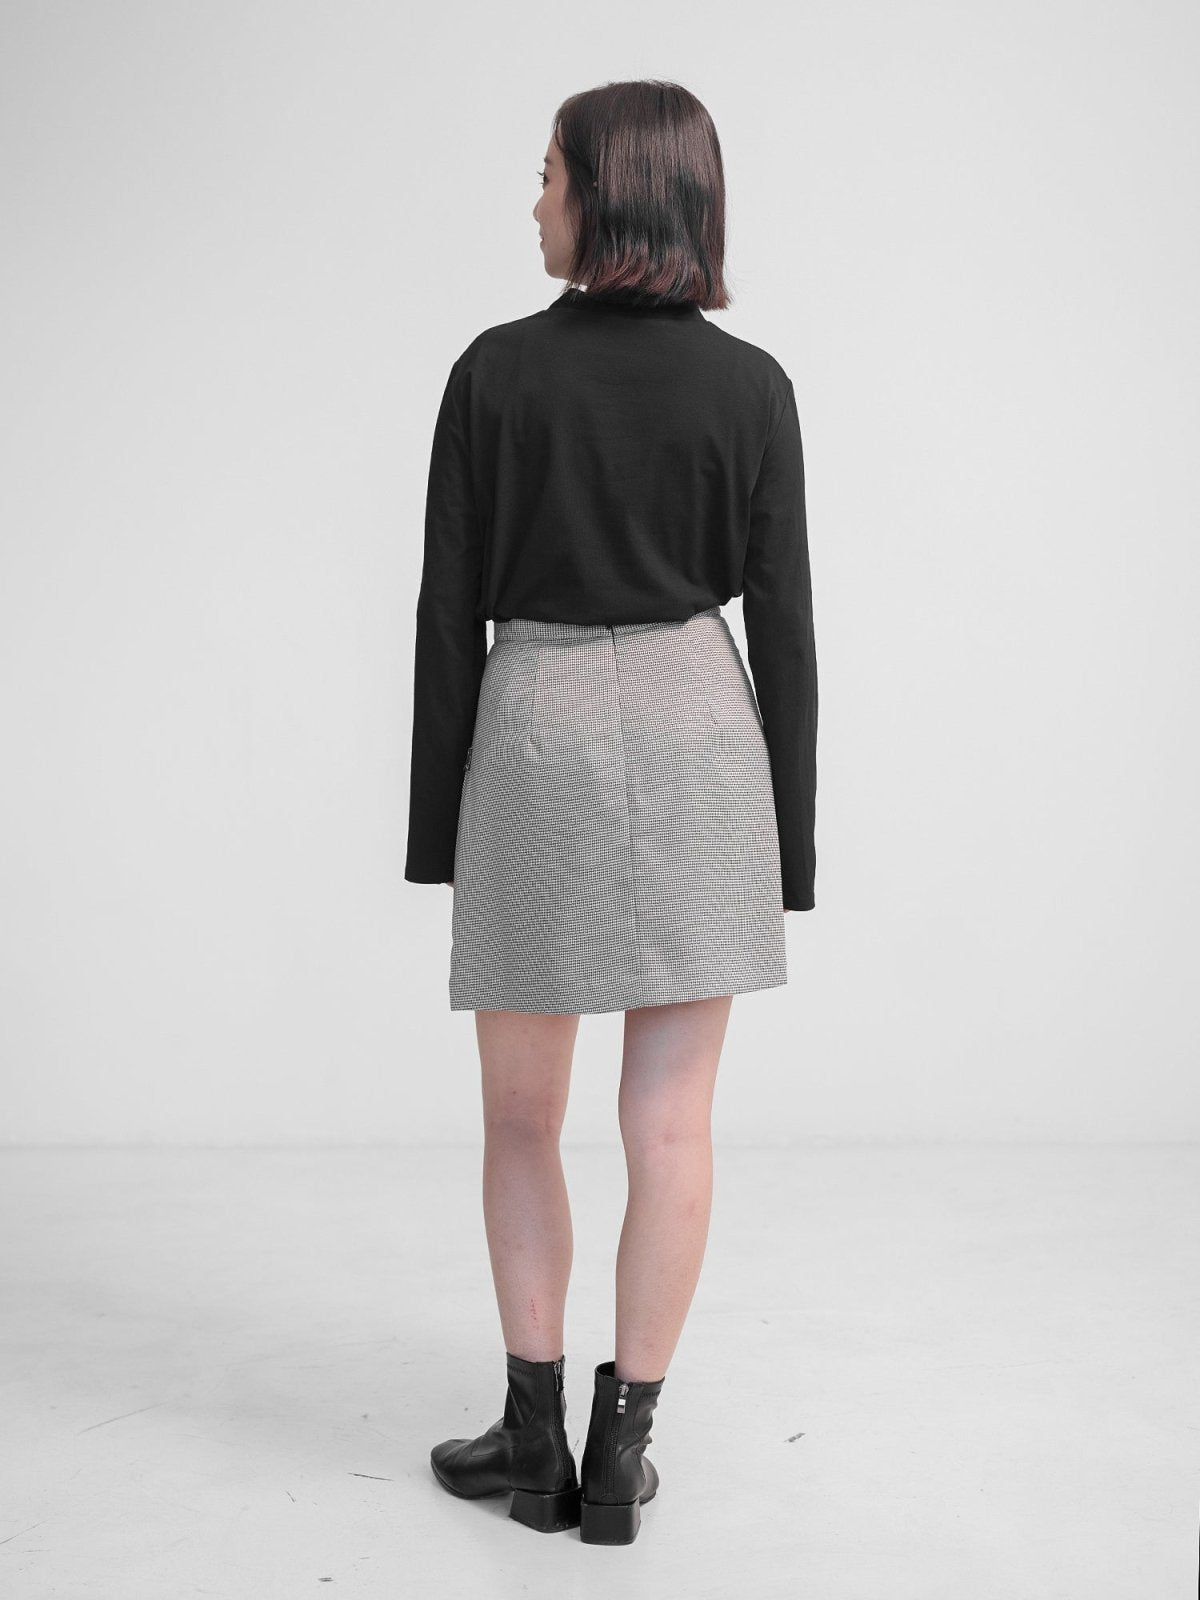 Esther Funnel Neck Long Sleeve Top - DAG-DD1118-23BlackS - Black - S - D'zage Designs